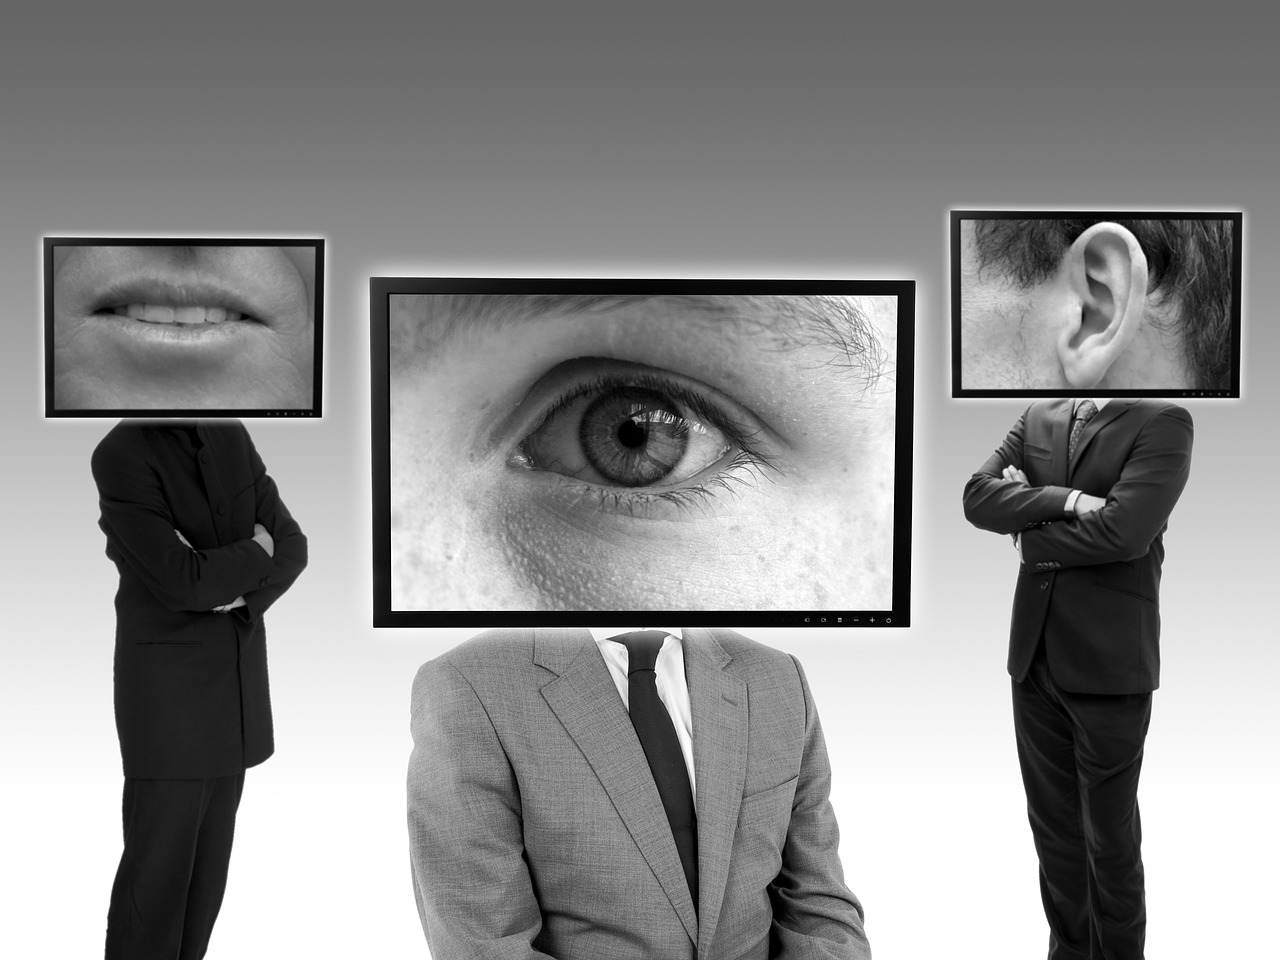 employee monitoring. Bosses spying through digital platforms